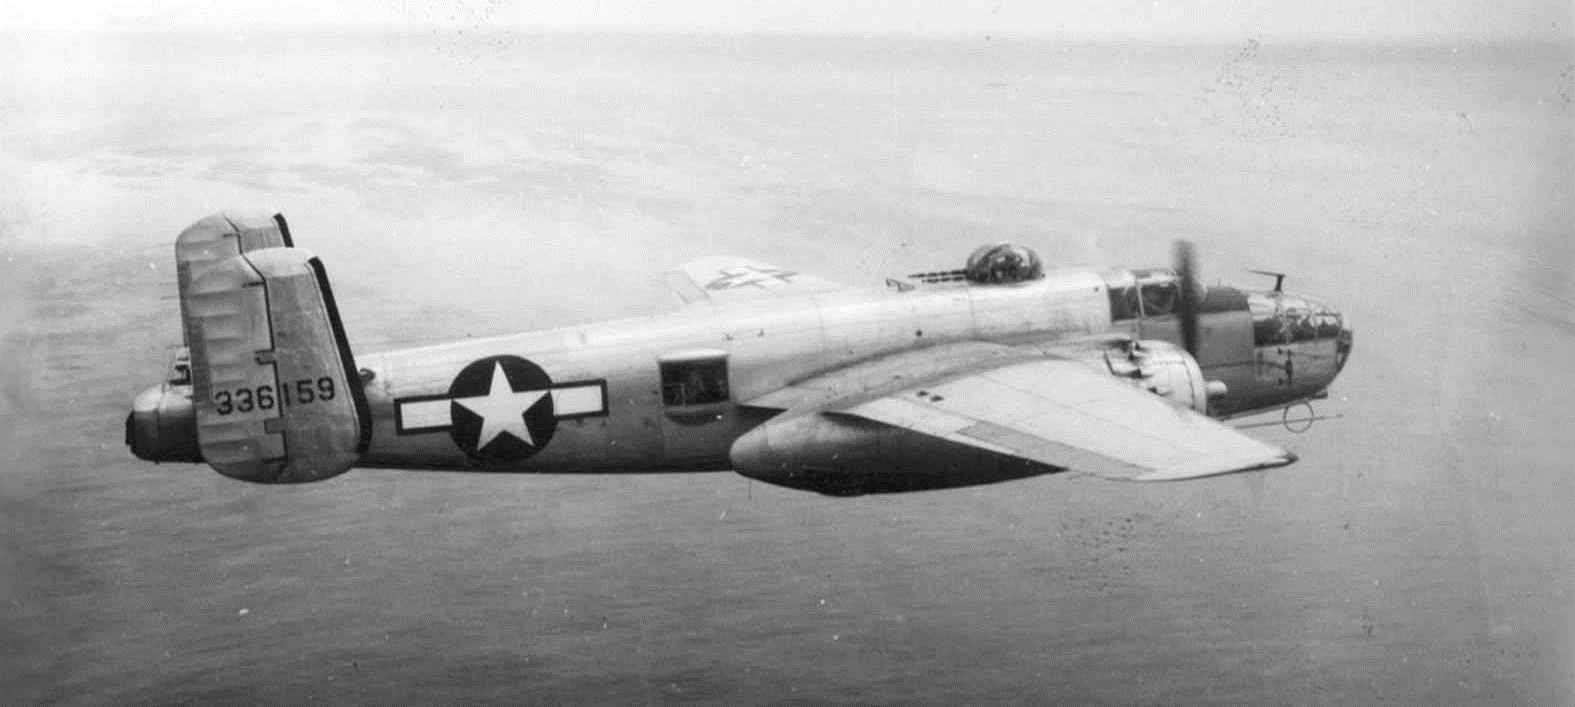 JetAv TV – World War II U.S. Aviation